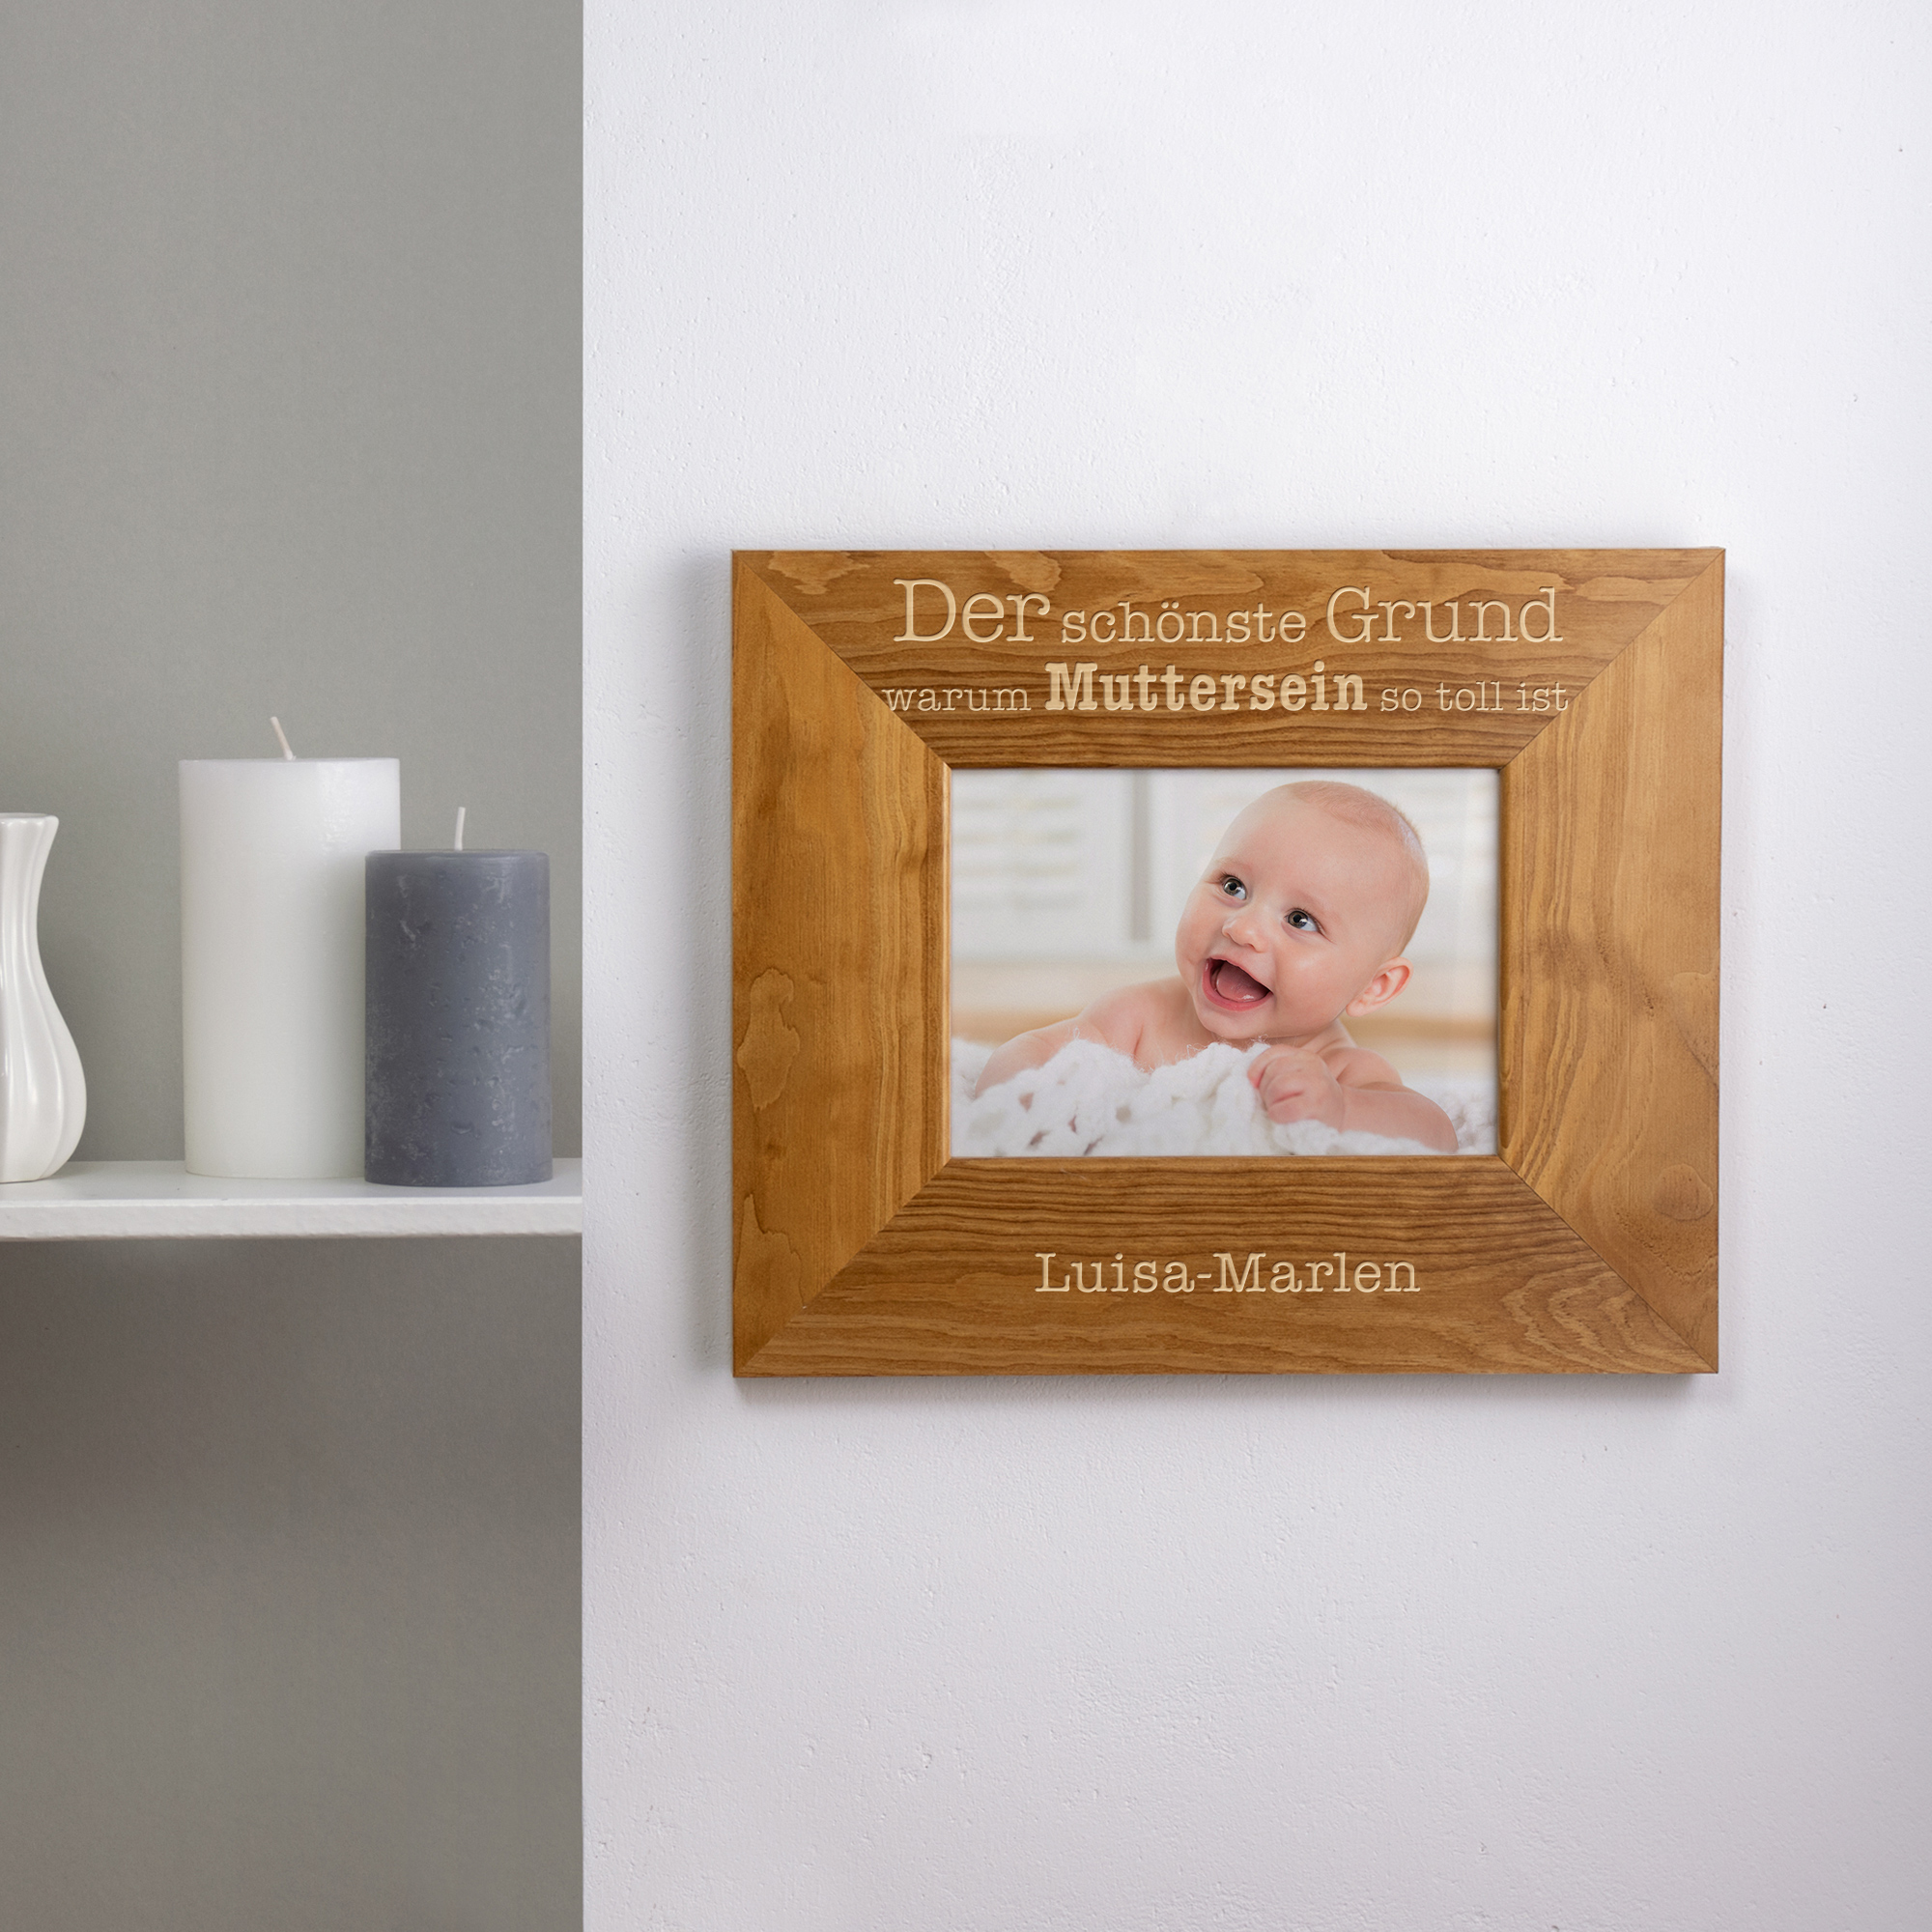 Bilderrahmen aus Holz mit Gravur - Muttersein - Personalisiert